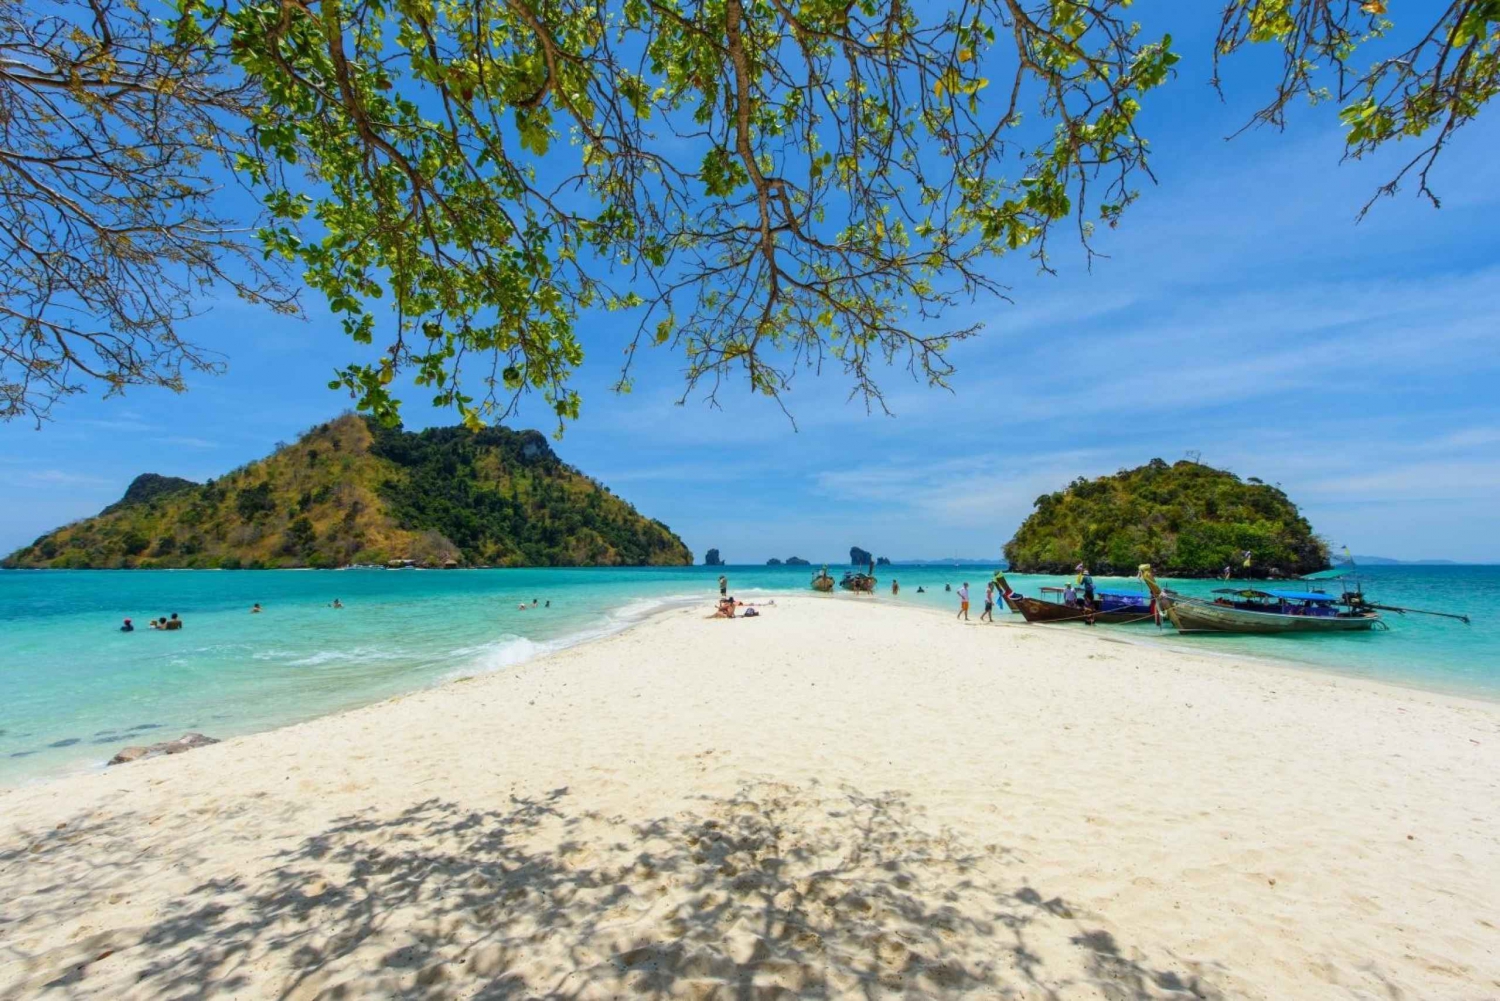 Excursión a Phuket : Las 4 islas de Krabi con guía en español